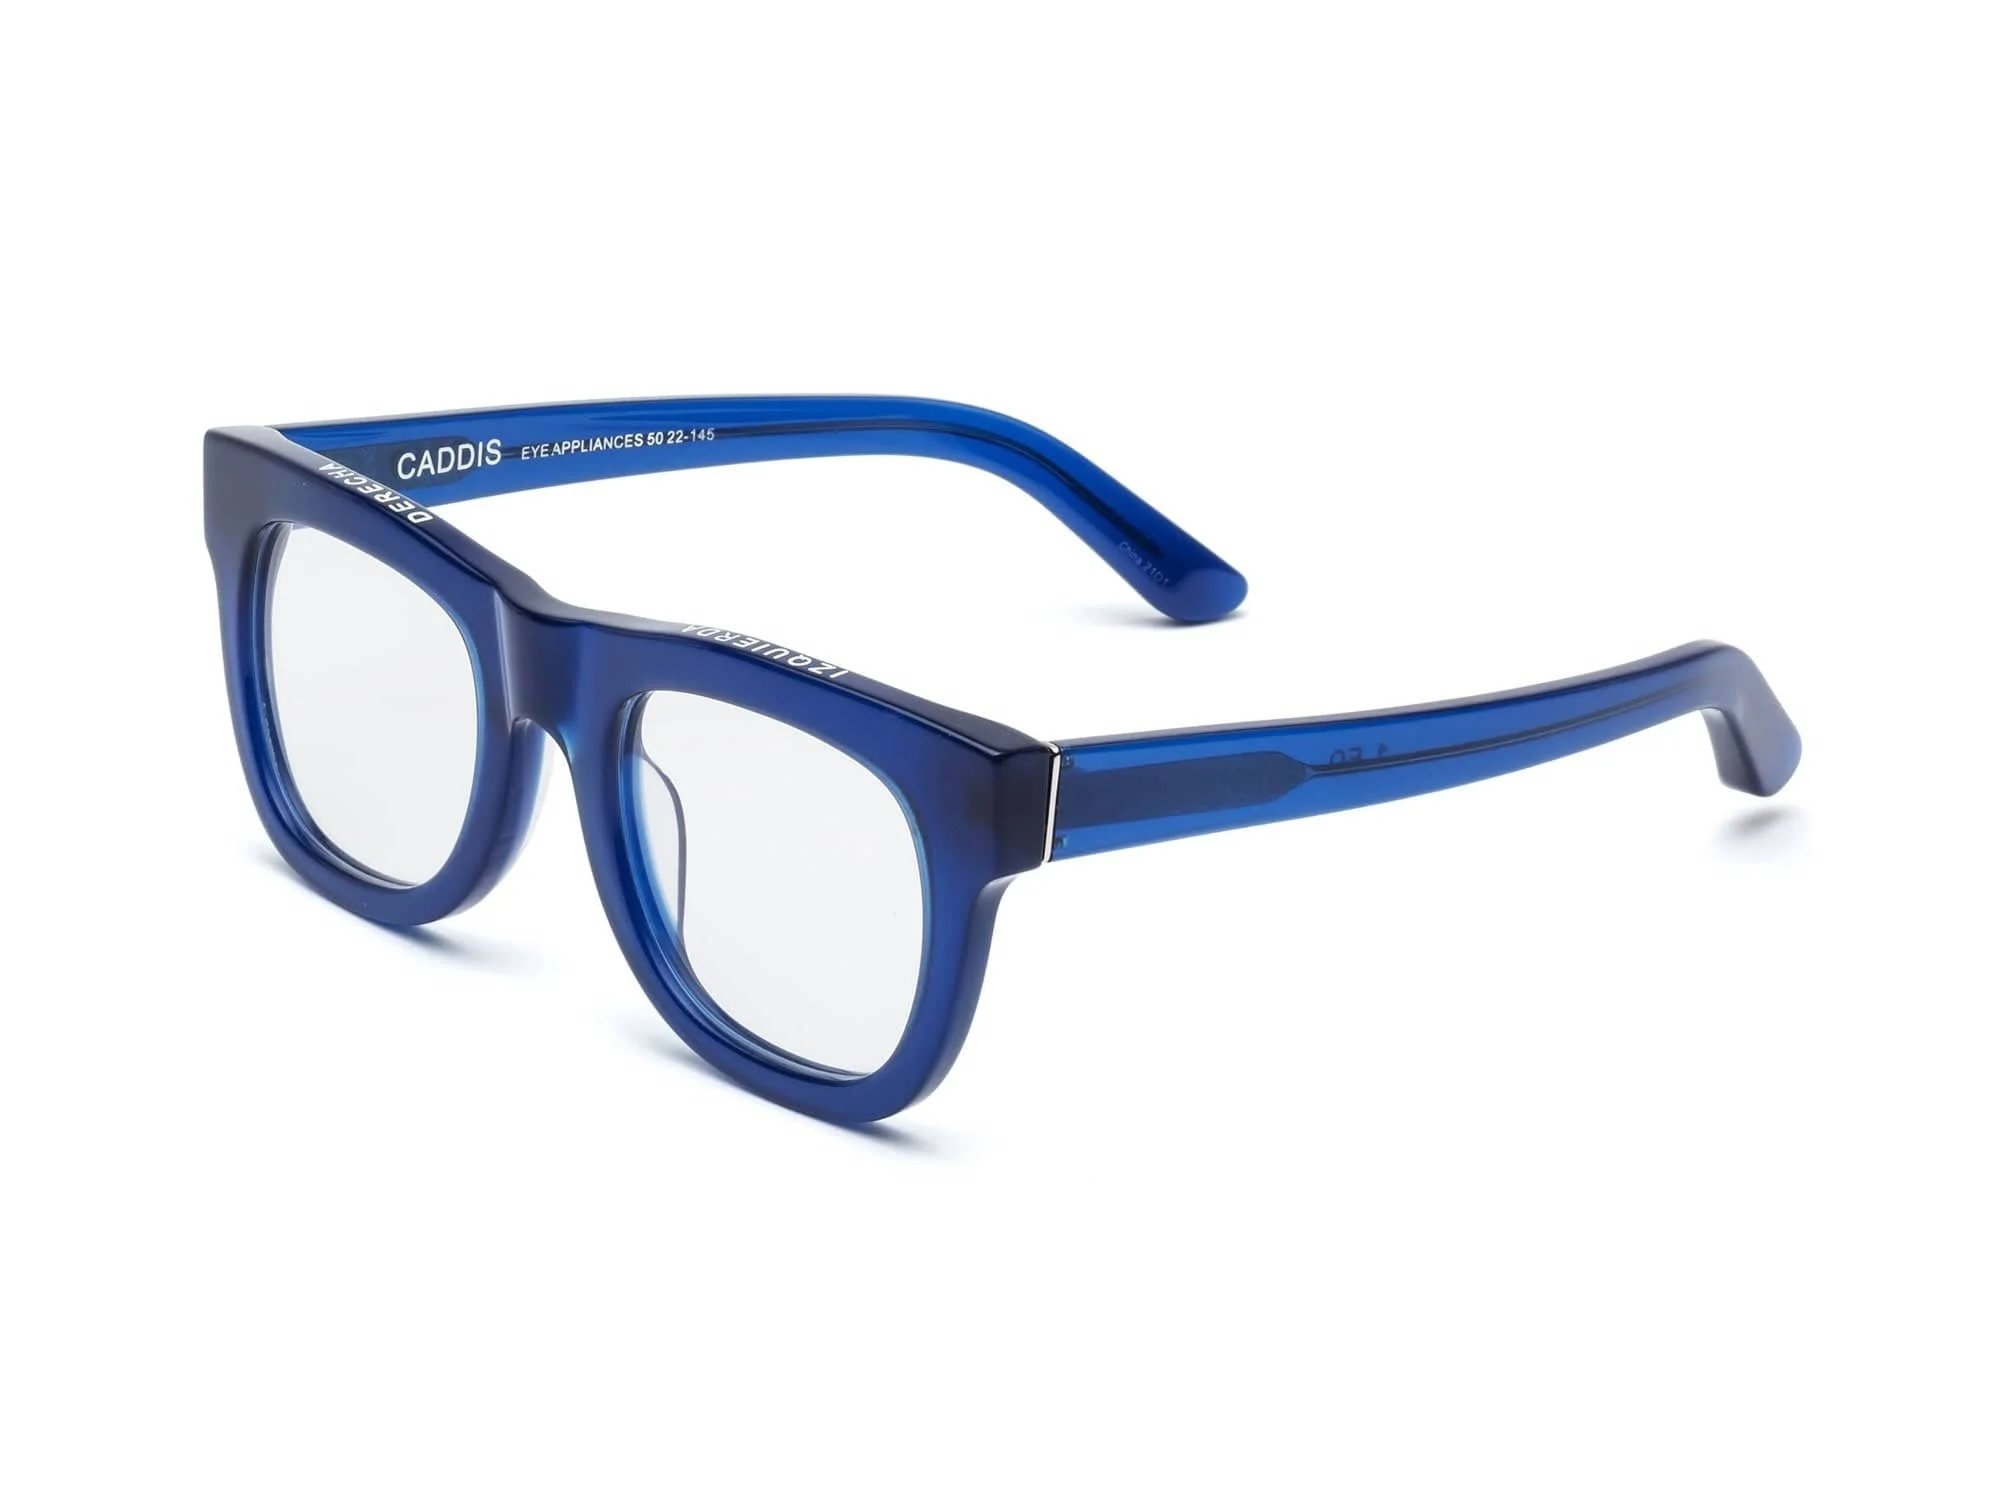 Caddis Glasses, $84 SALE!